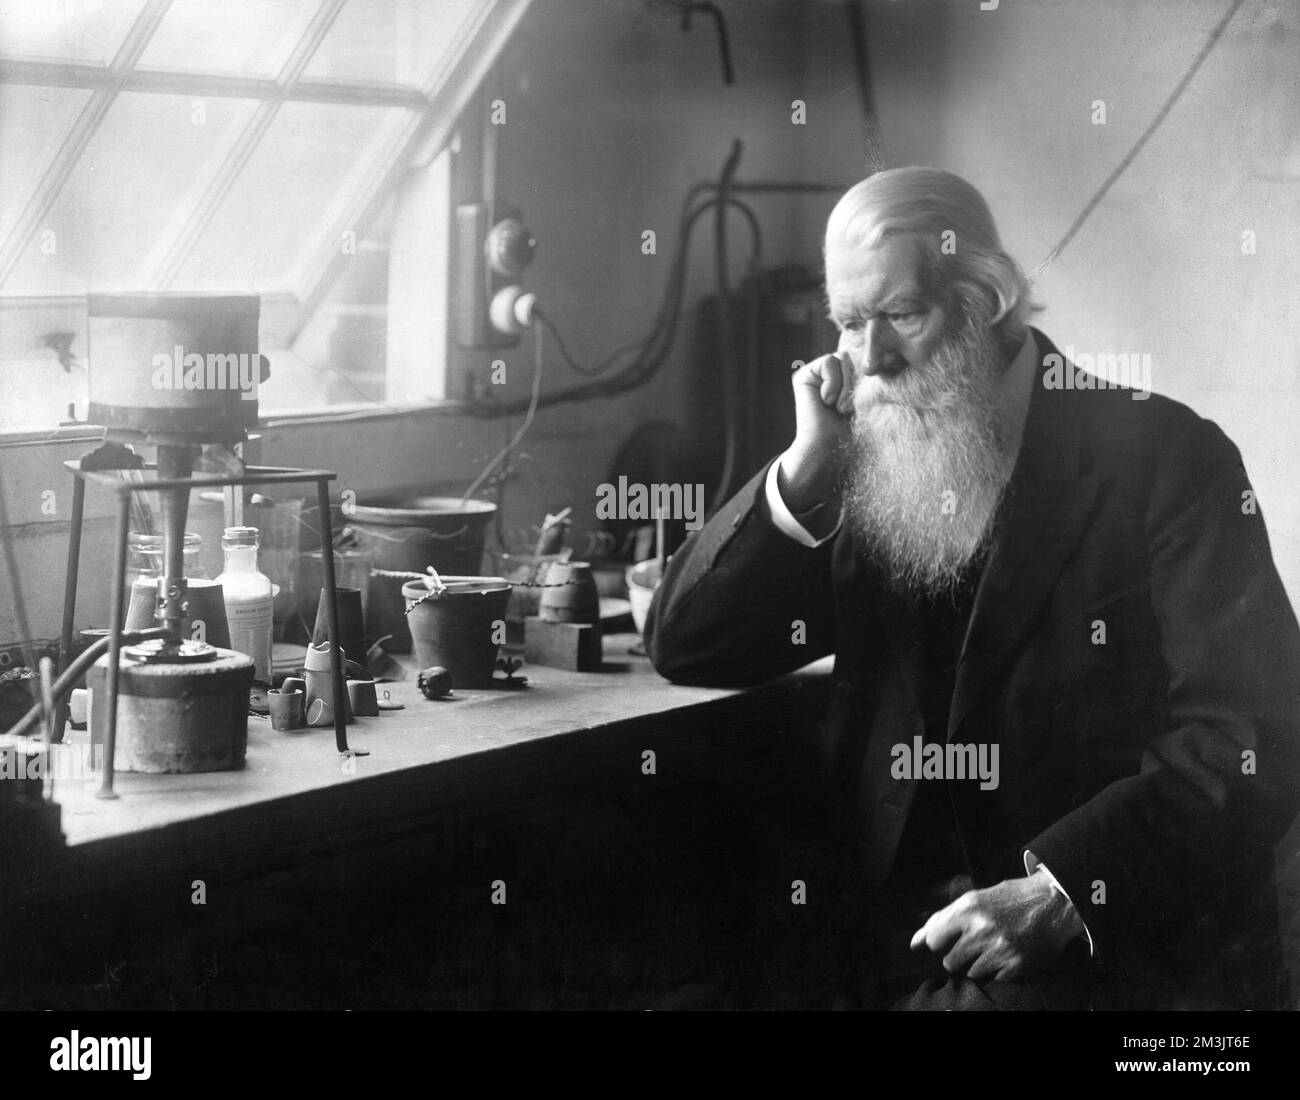 Sir Joseph Wilson Swan (1828-1914), englischer Chemiker, Erfinder und Industrielle. Er erfand nicht nur den fotografischen Prozess mit trockenen Platten, sondern führte 1879 seine erste erfolgreiche Demonstration einer Glühbirne vor. Innerhalb von vier Jahren produzierte er 10.000 Lampen pro Woche, und 1883 verschmolzen er sein Geschäft mit Thomas Alva Edison und gründete die Edison and Swan Electric Company. 1874 wurde er Fellow der Royal Society und wurde 1904 zum Ritter geschlagen. Stockfoto